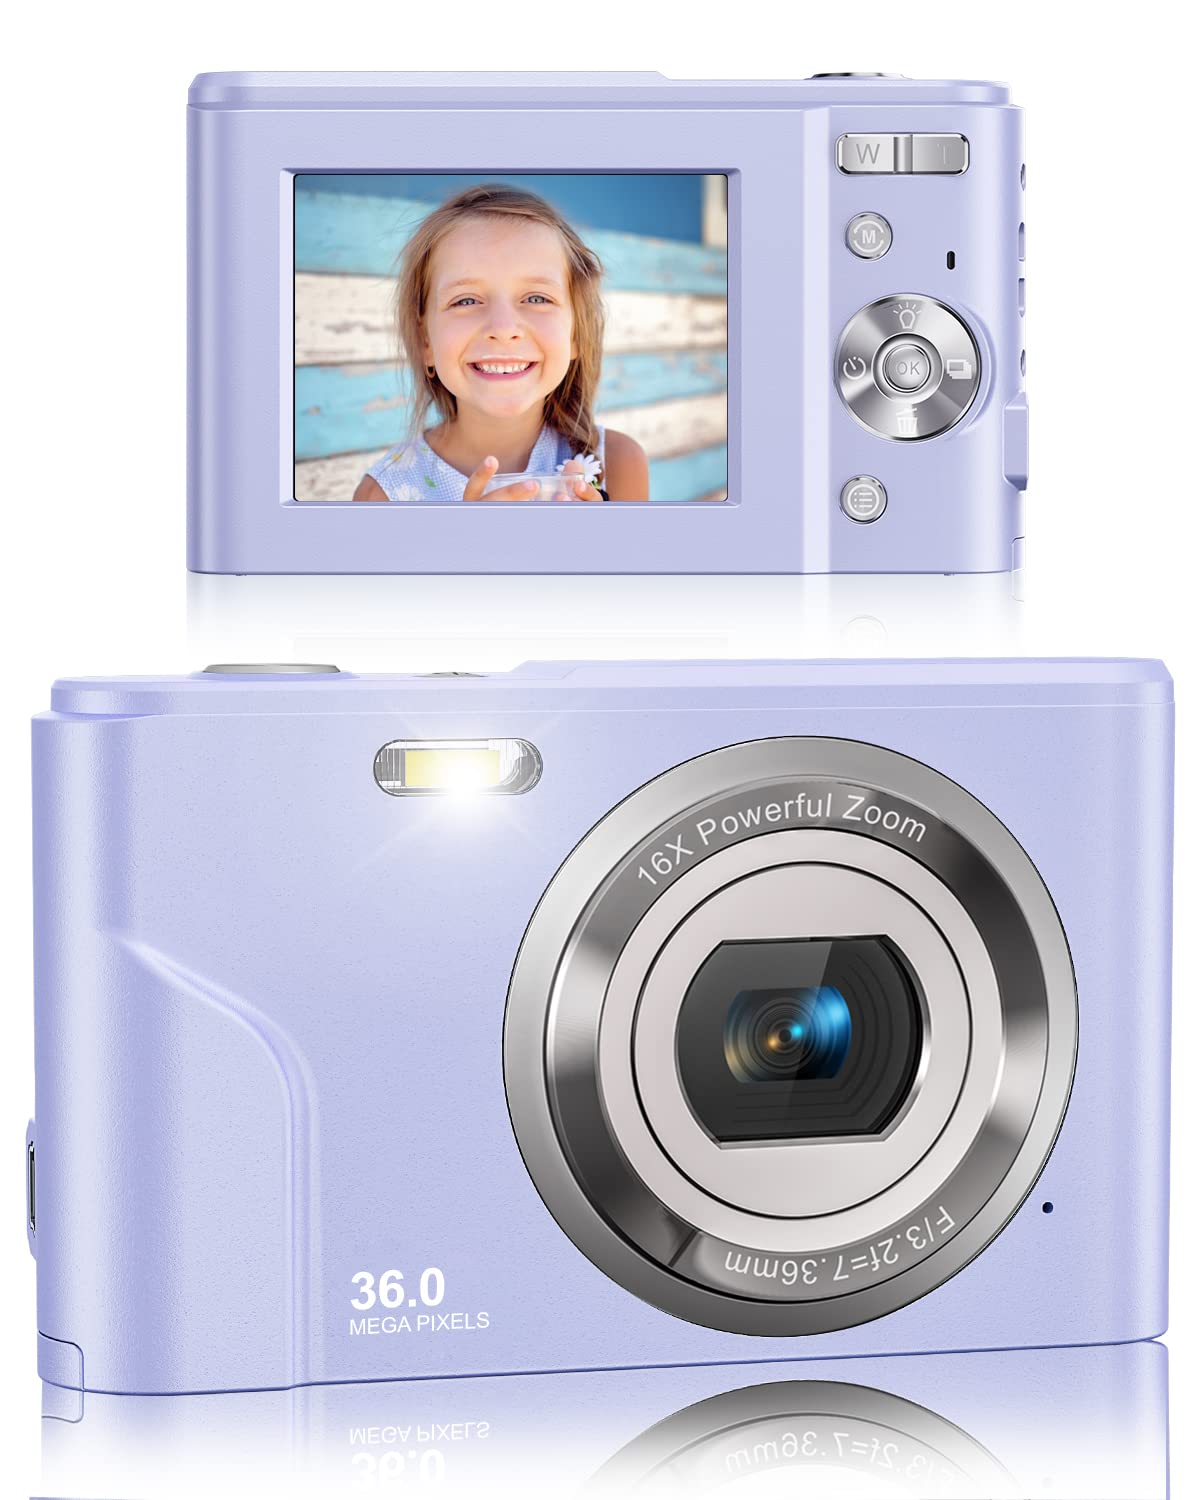 Digital Camera, Lecran FHD 1080P 36.0 Mega Pixels Vlogging Camera with 16X Digital Zoom, LCD Screen, Compact Portable Mini Cameras for Students, Teens, Kids (Purple)